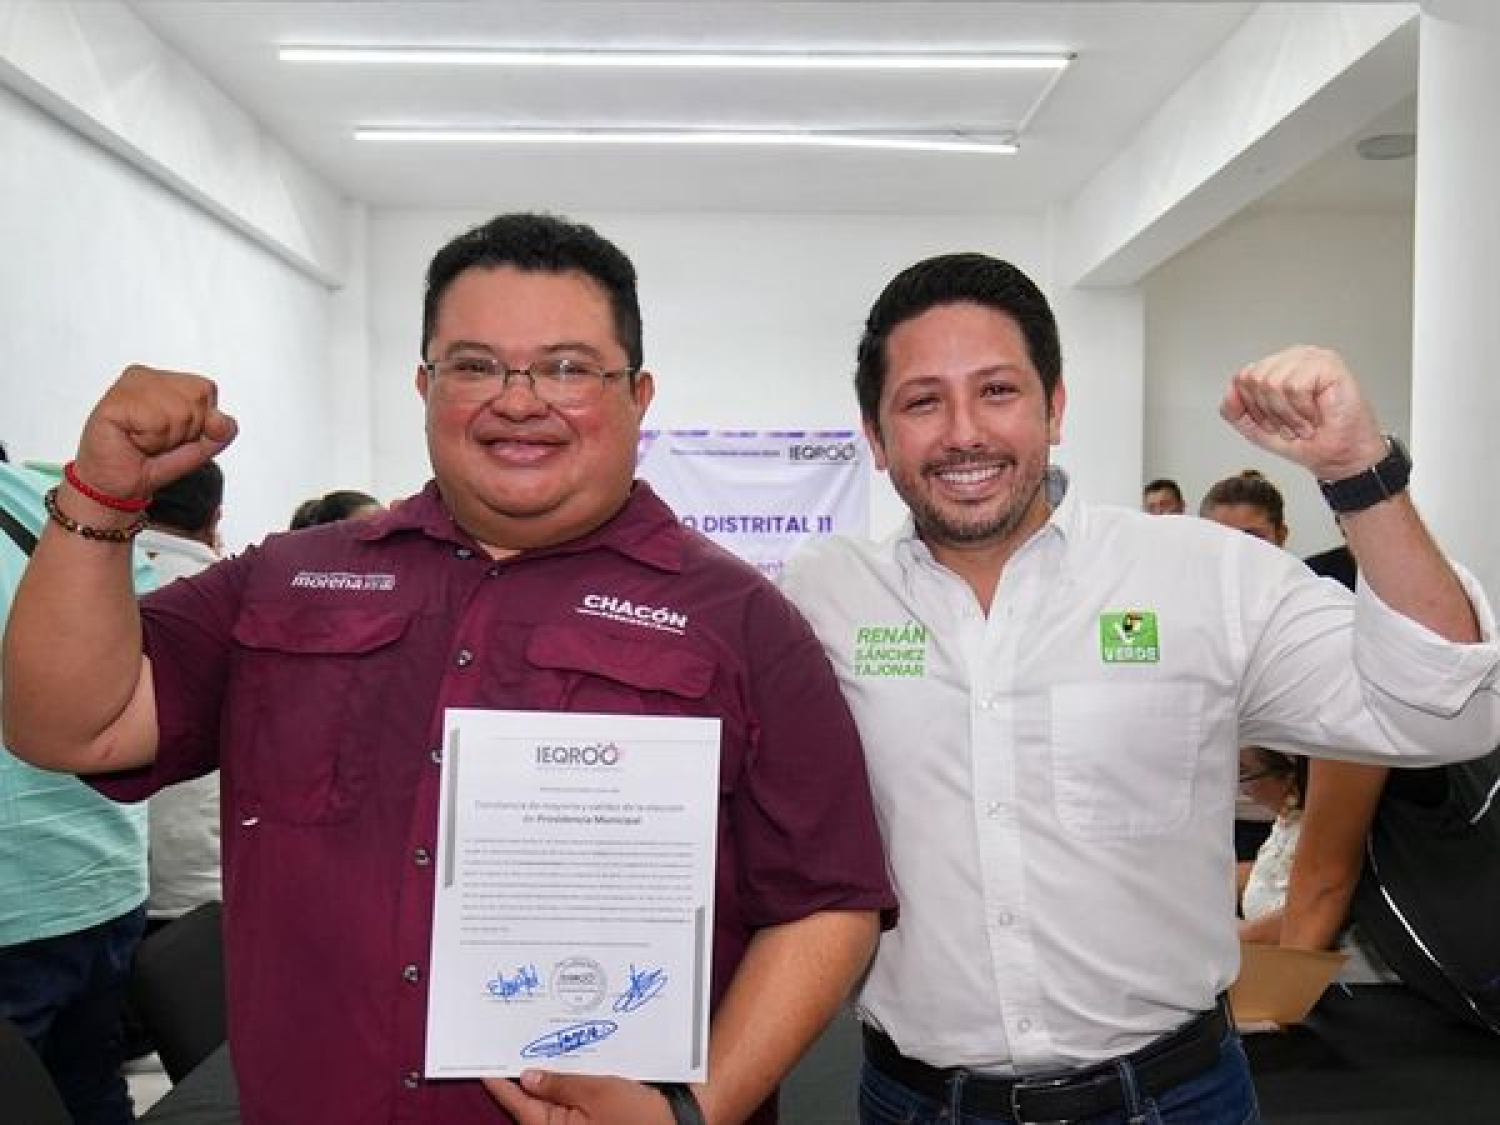 En unidad vamos a transformar Cozumel, destaca Renán Sánchez, junto a José Luis Chacón